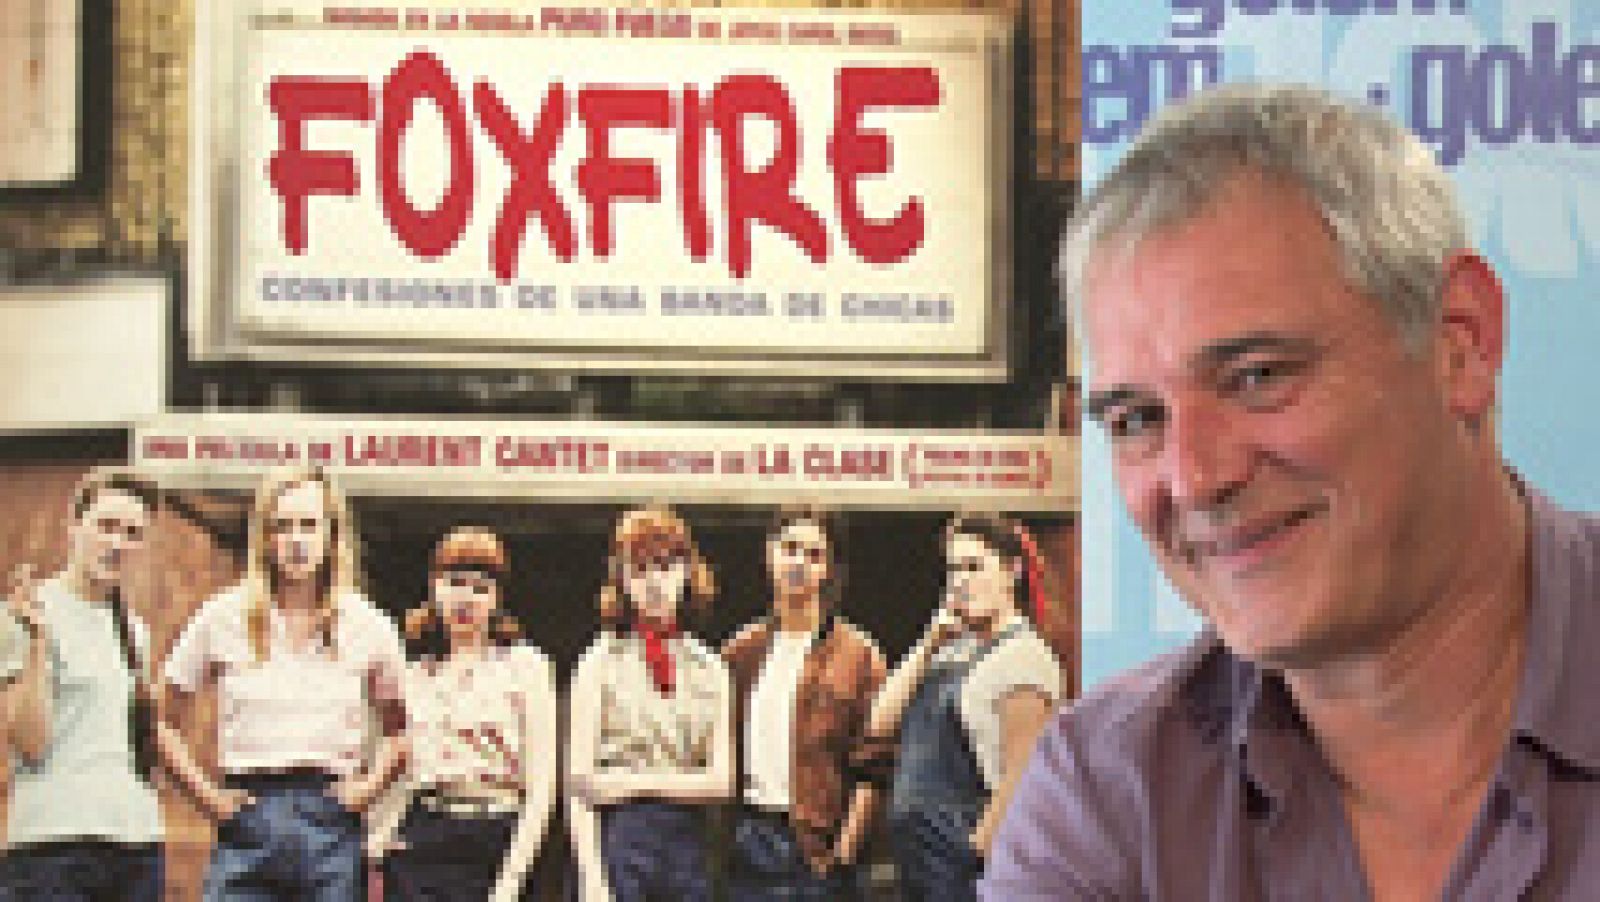 El director de La clase, estrena en España su última película: Foxfire, adaptación de una novela de Joyce Carol Oates.
